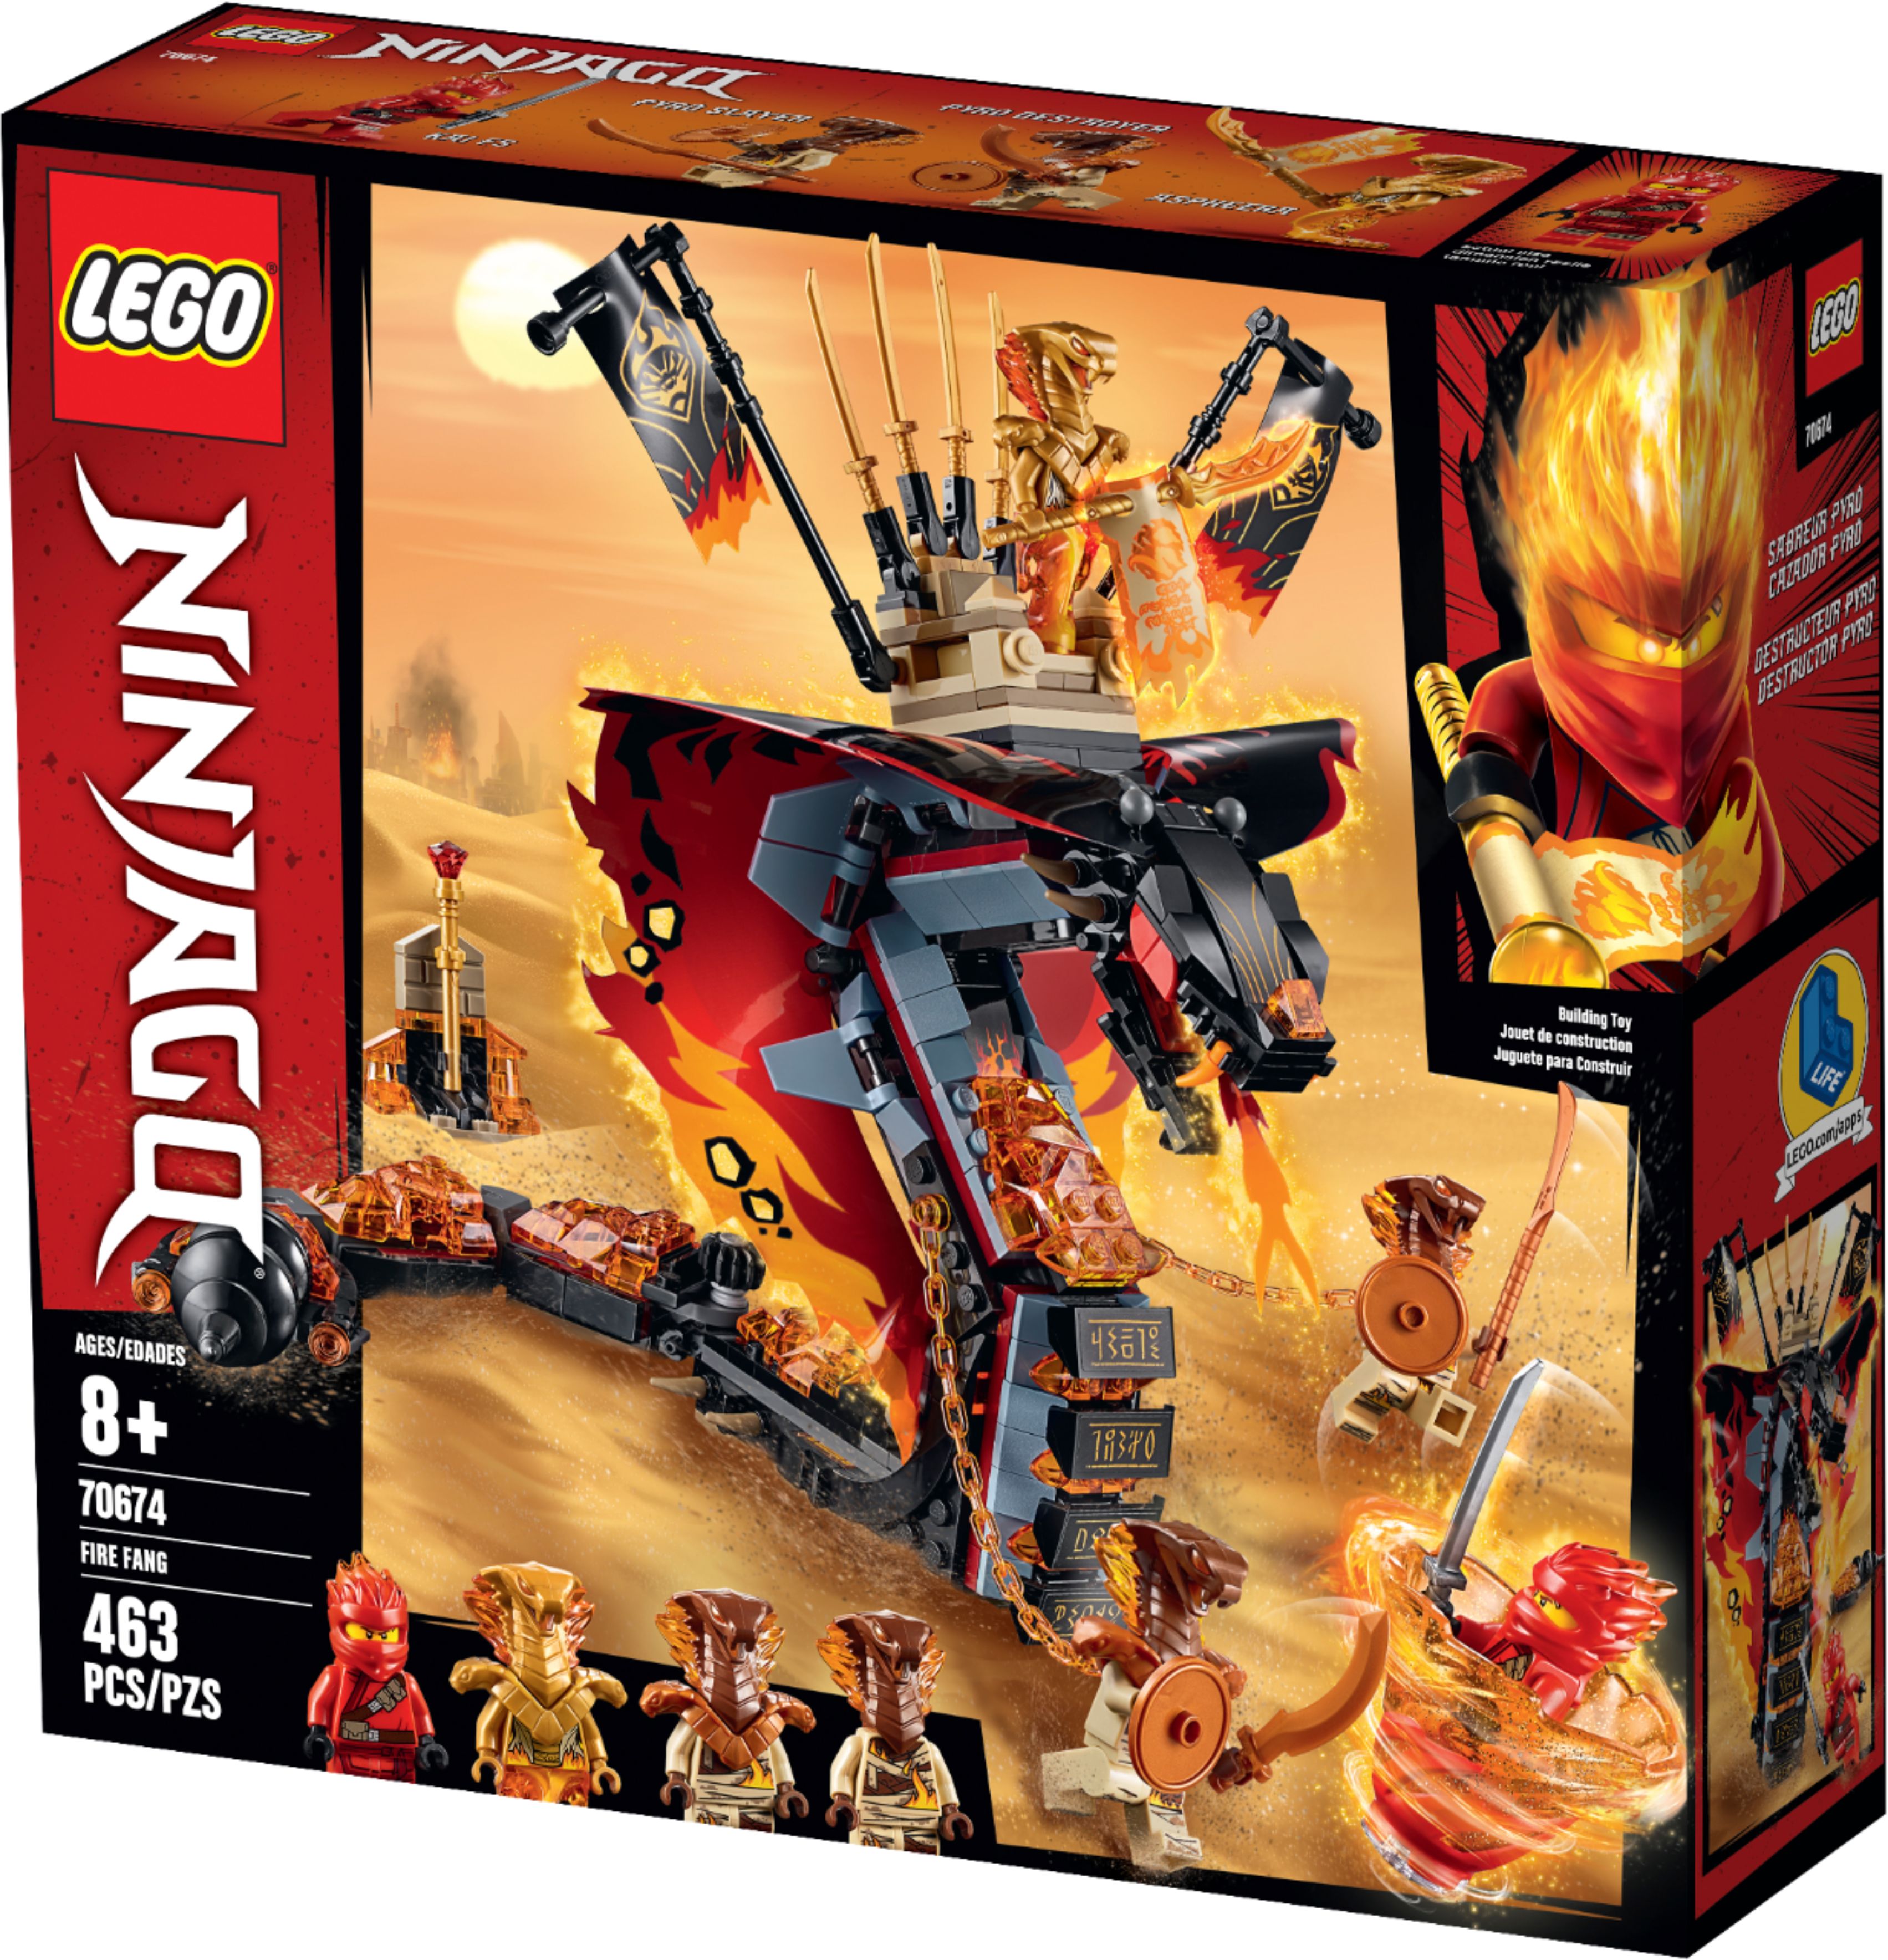 Best Buy: LEGO Fire 70674